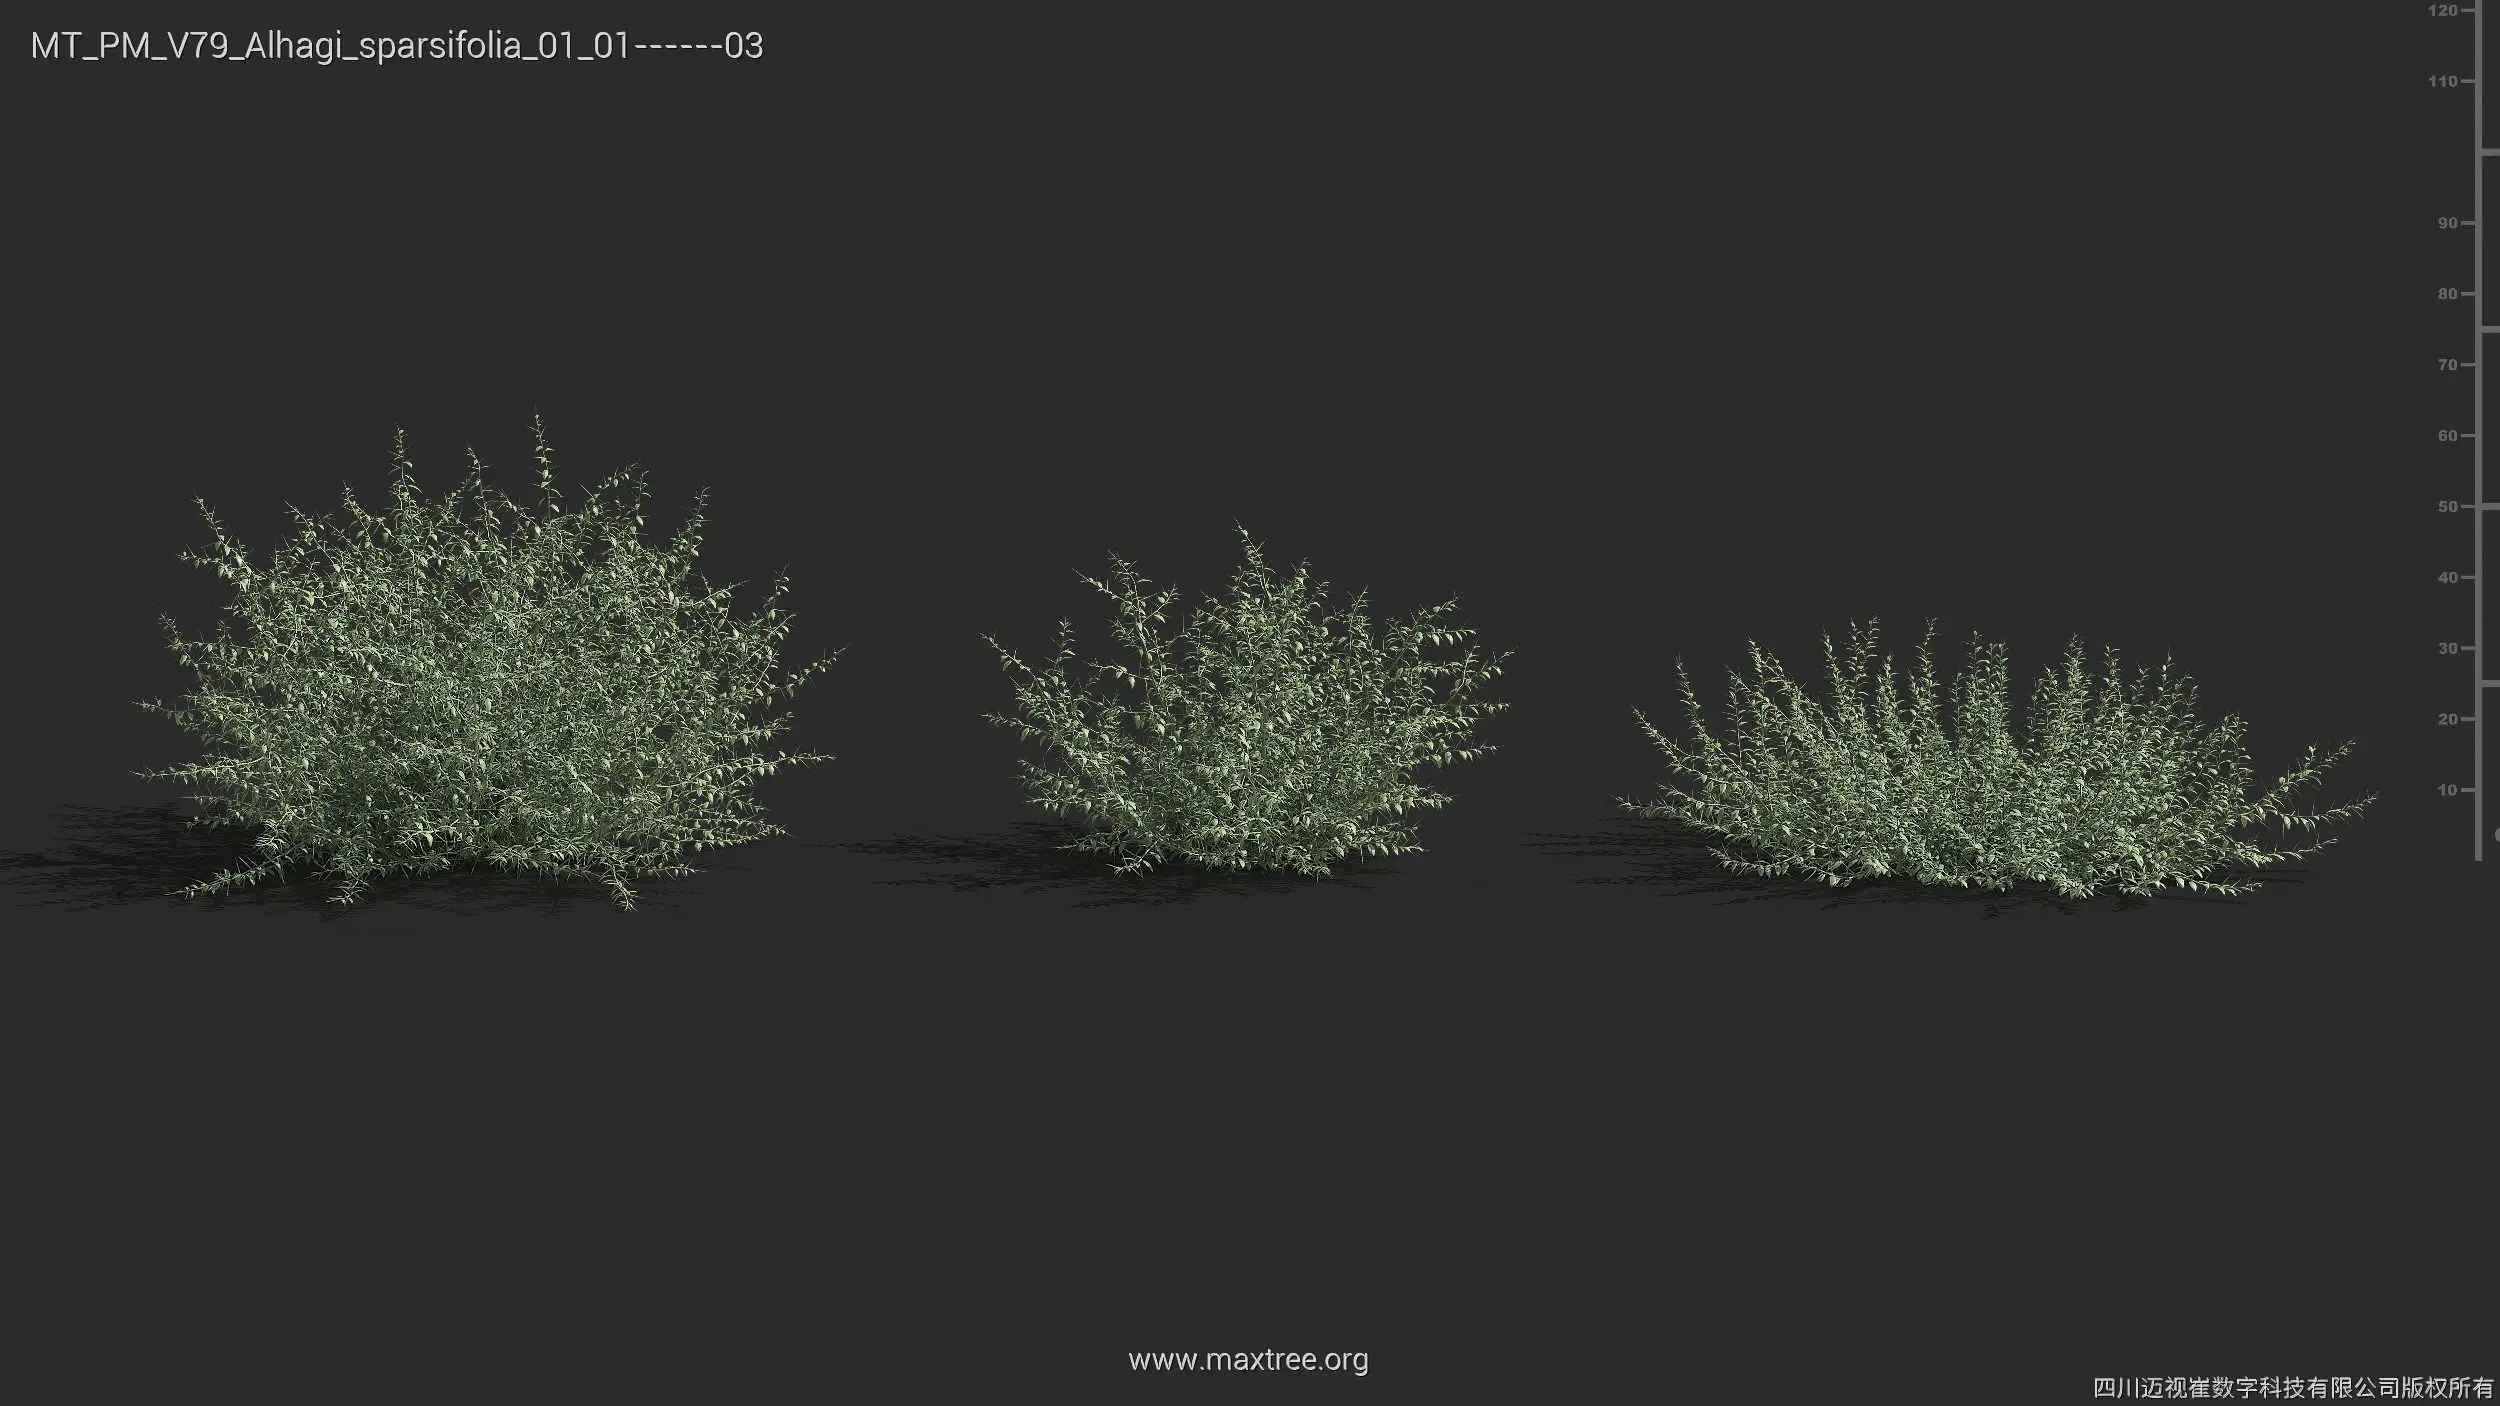 مدل سه بعدی گیاهان بیابانی - 4